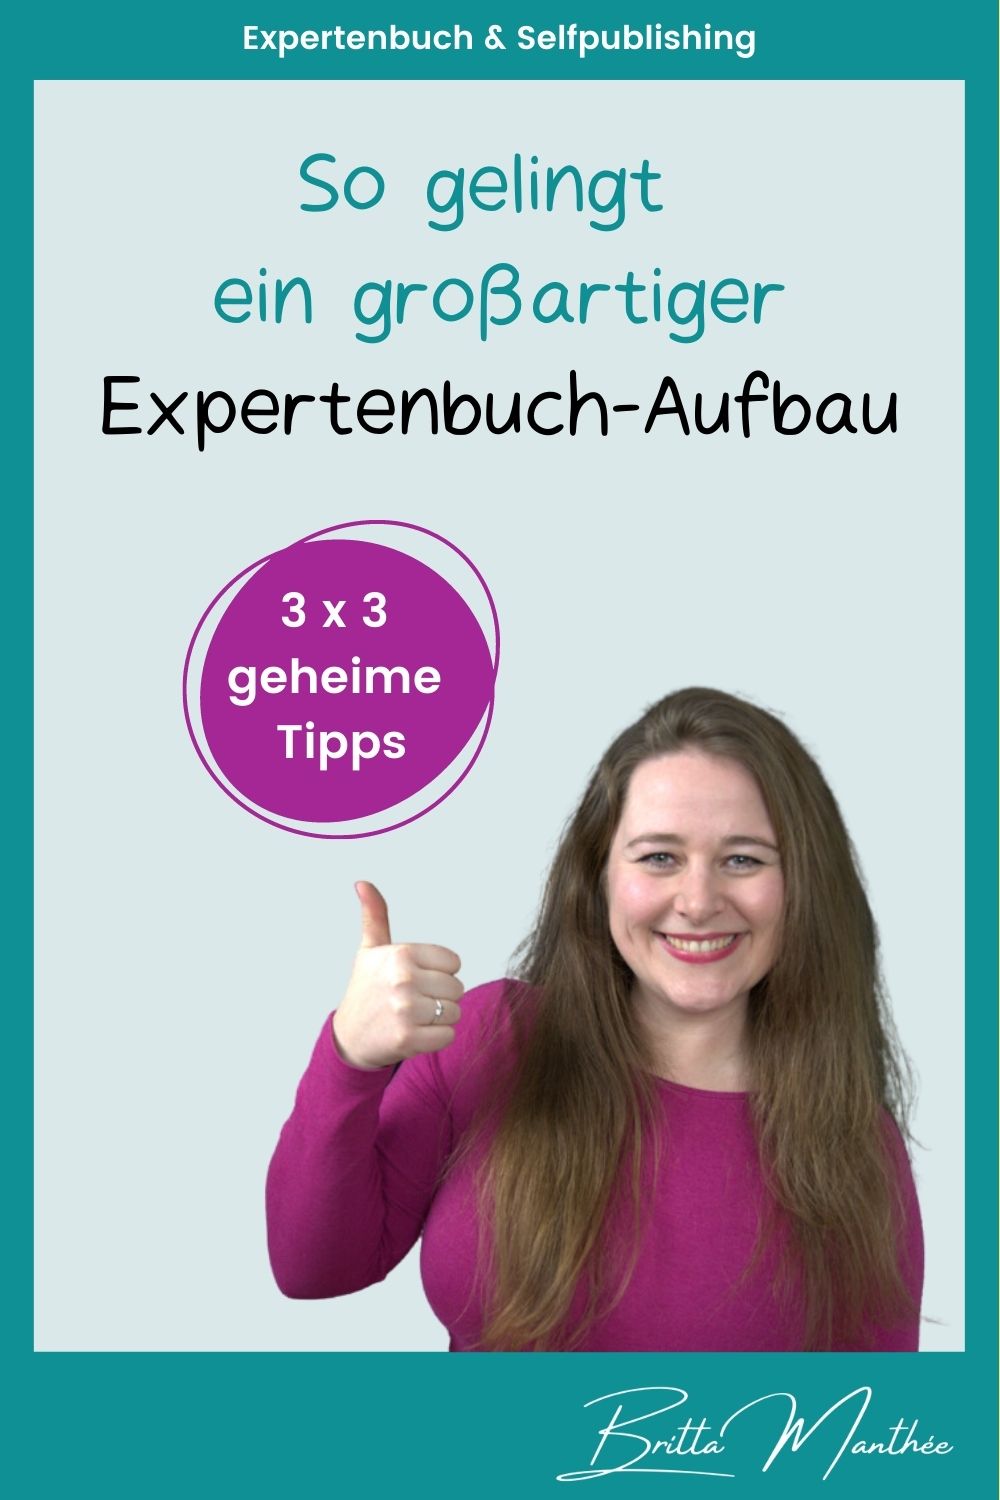 Blog Pin - Expertenbuch-Aufbau - Britta Manthee